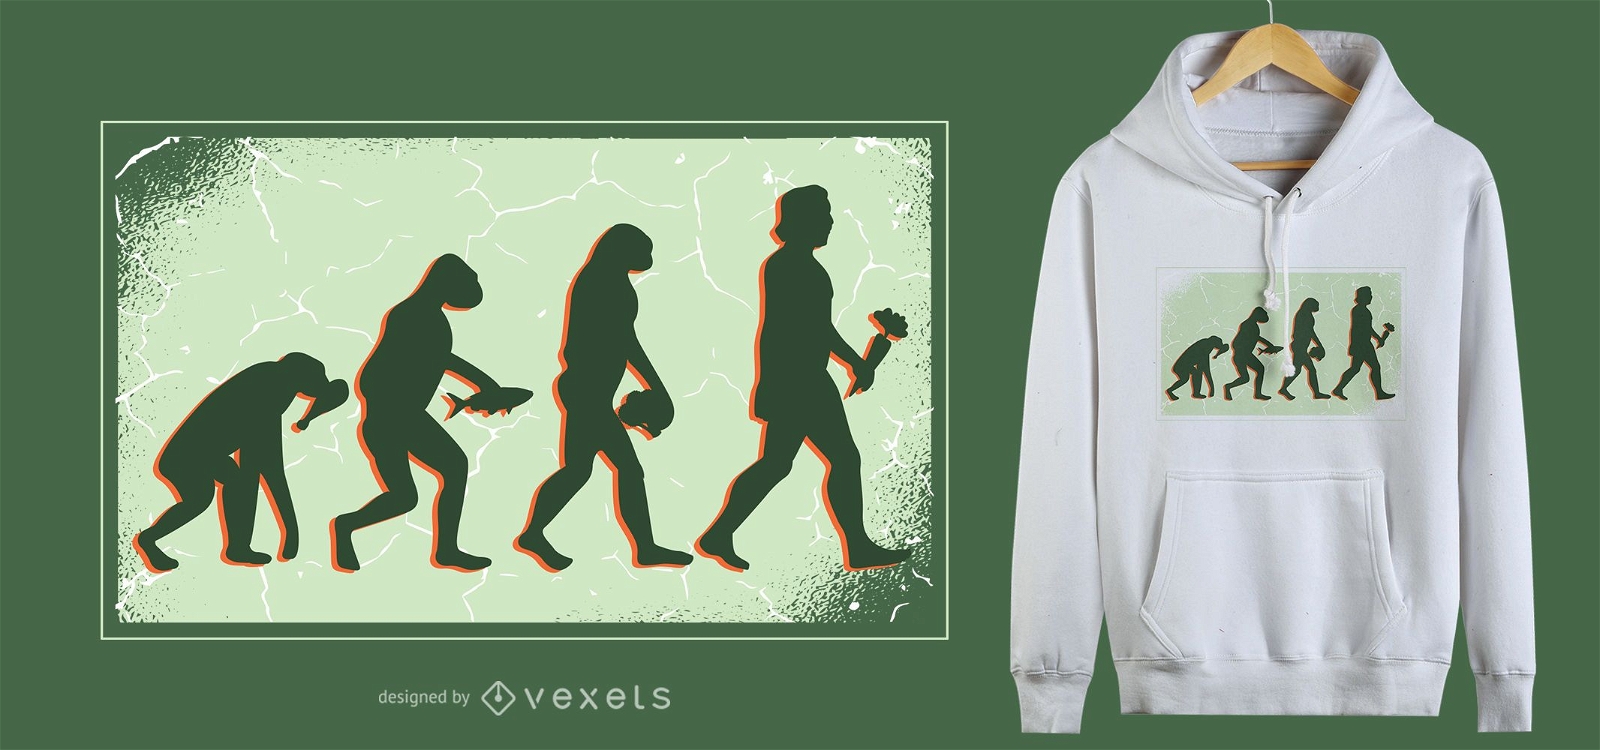 Vegane Evolution T-Shirt Design